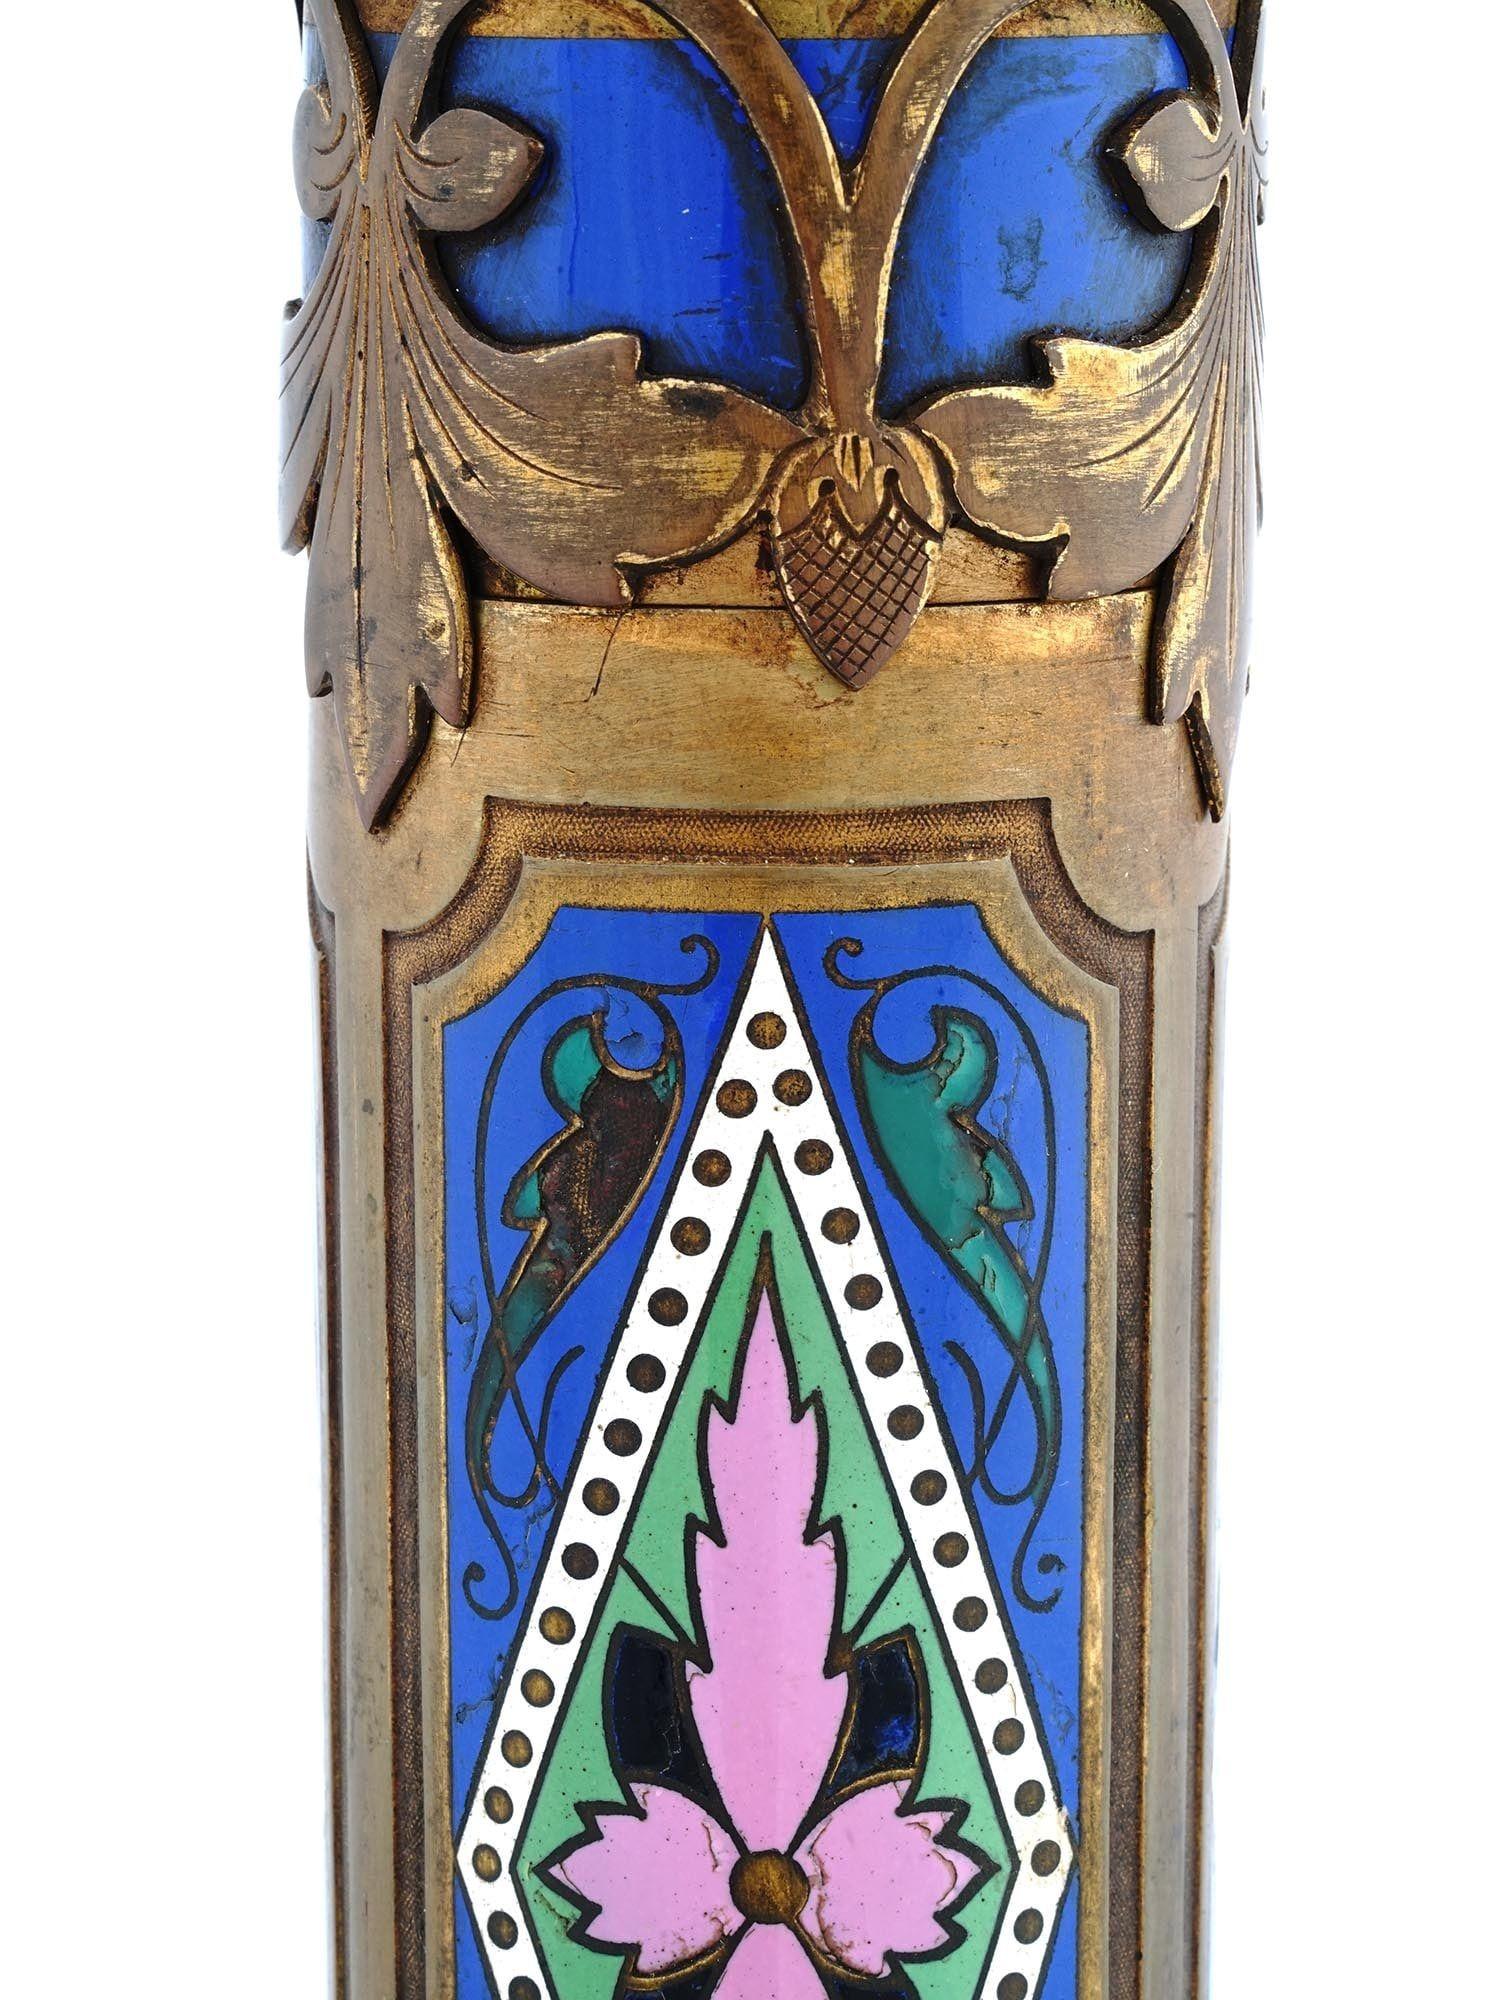 Einzigartige und seltene bronzene Tischlampe in Säulenform mit blauem und rosafarbenem, floralem Email auf quadratischem Sockel mit Blattmotiven. Edward F. Caldwell zugeschrieben, etwa 1910er Jahre.  Mit Steckdosen und Verkabelung, einsatzbereit.